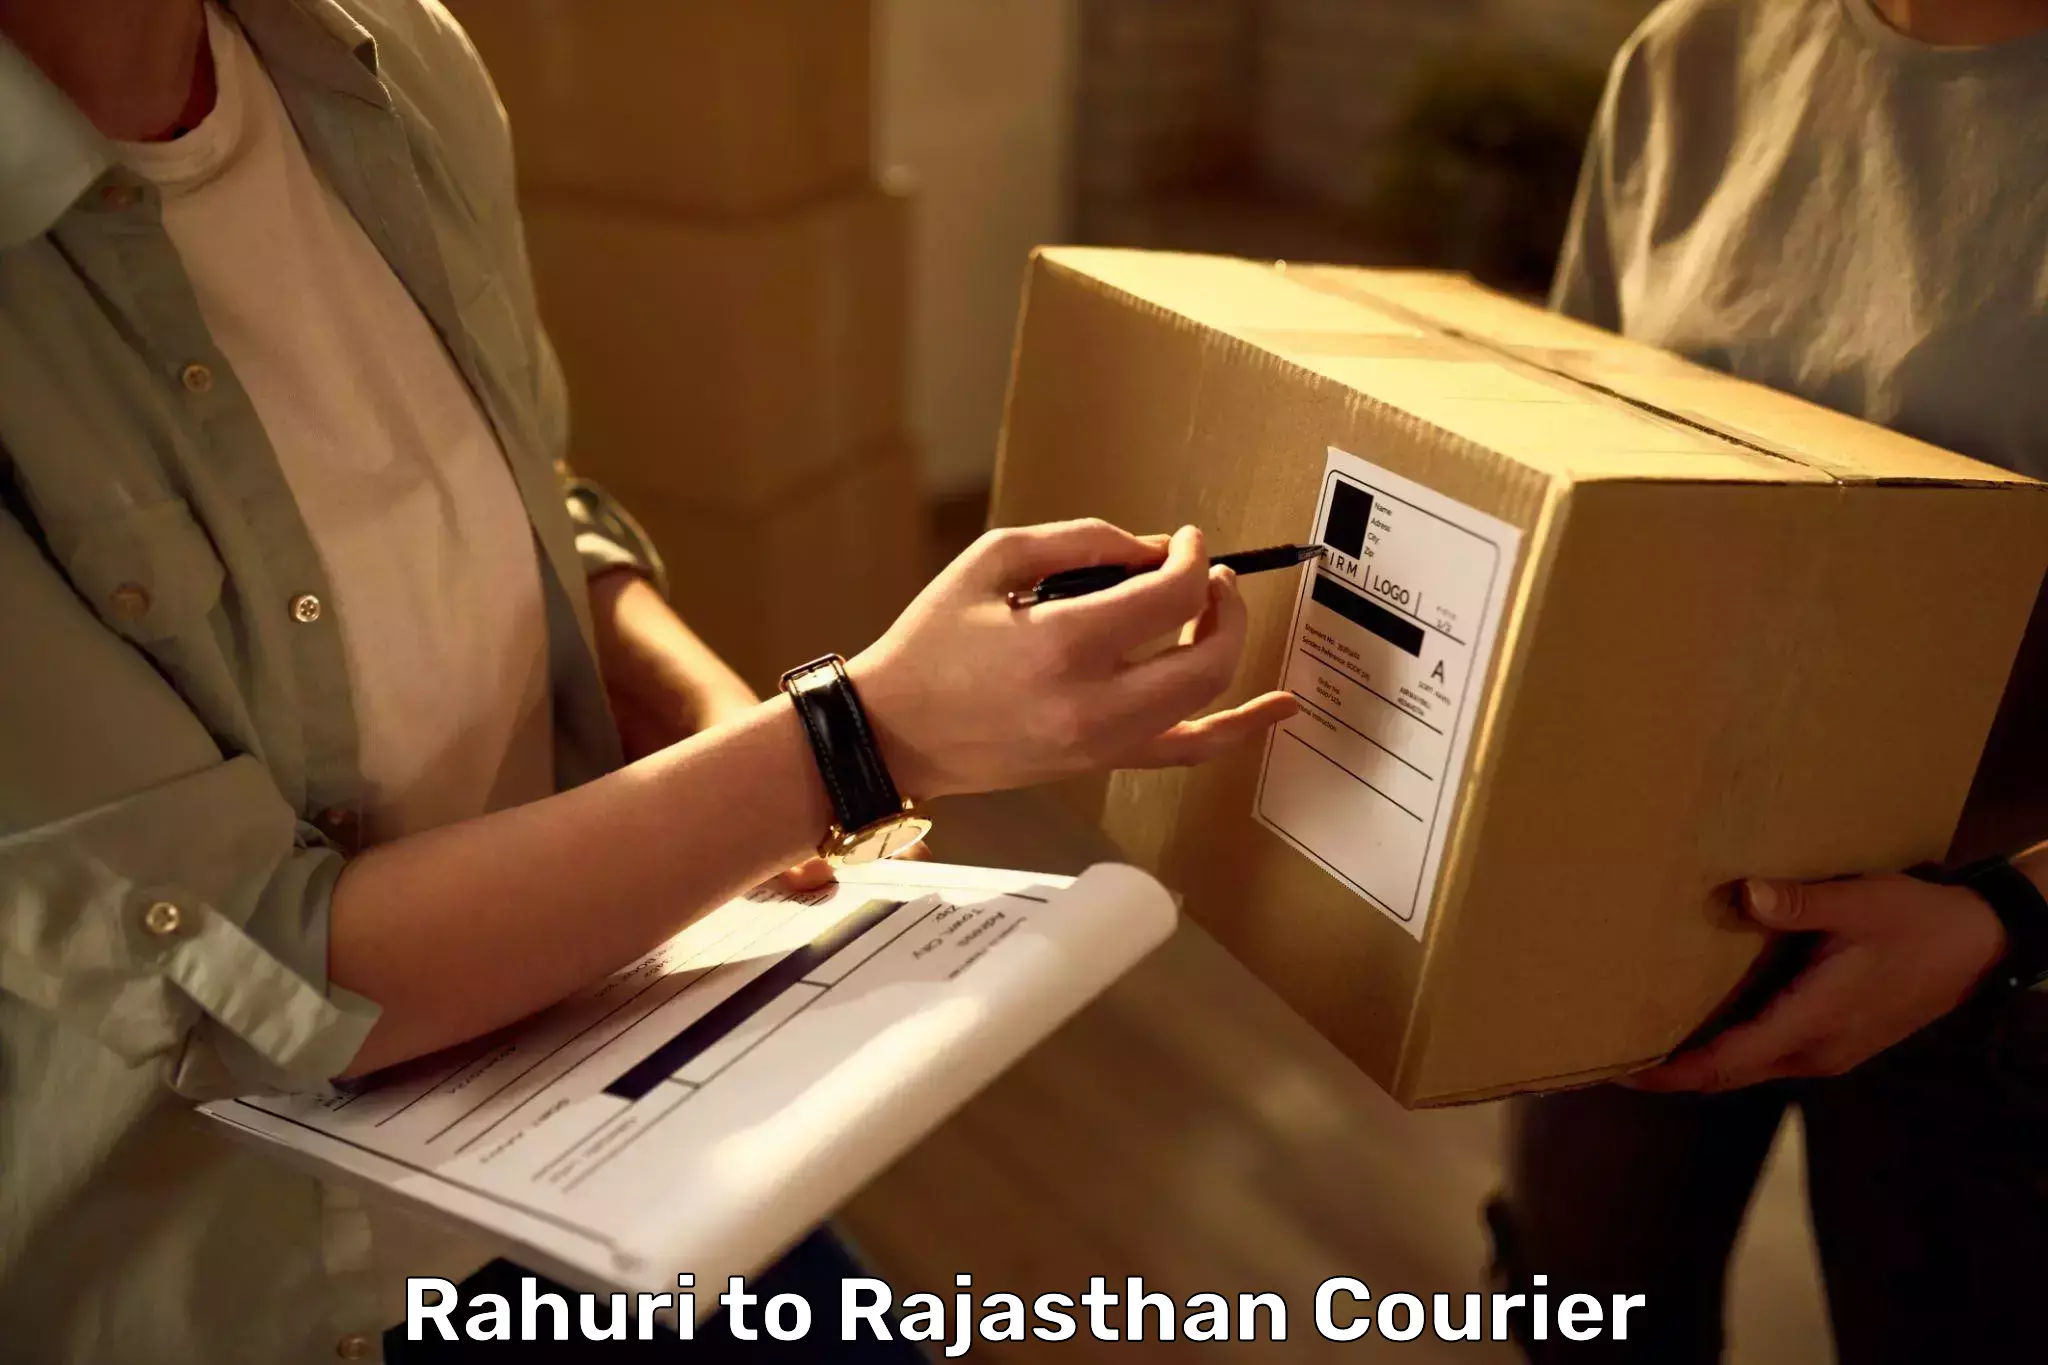 Luggage transport operations Rahuri to Rajasthan